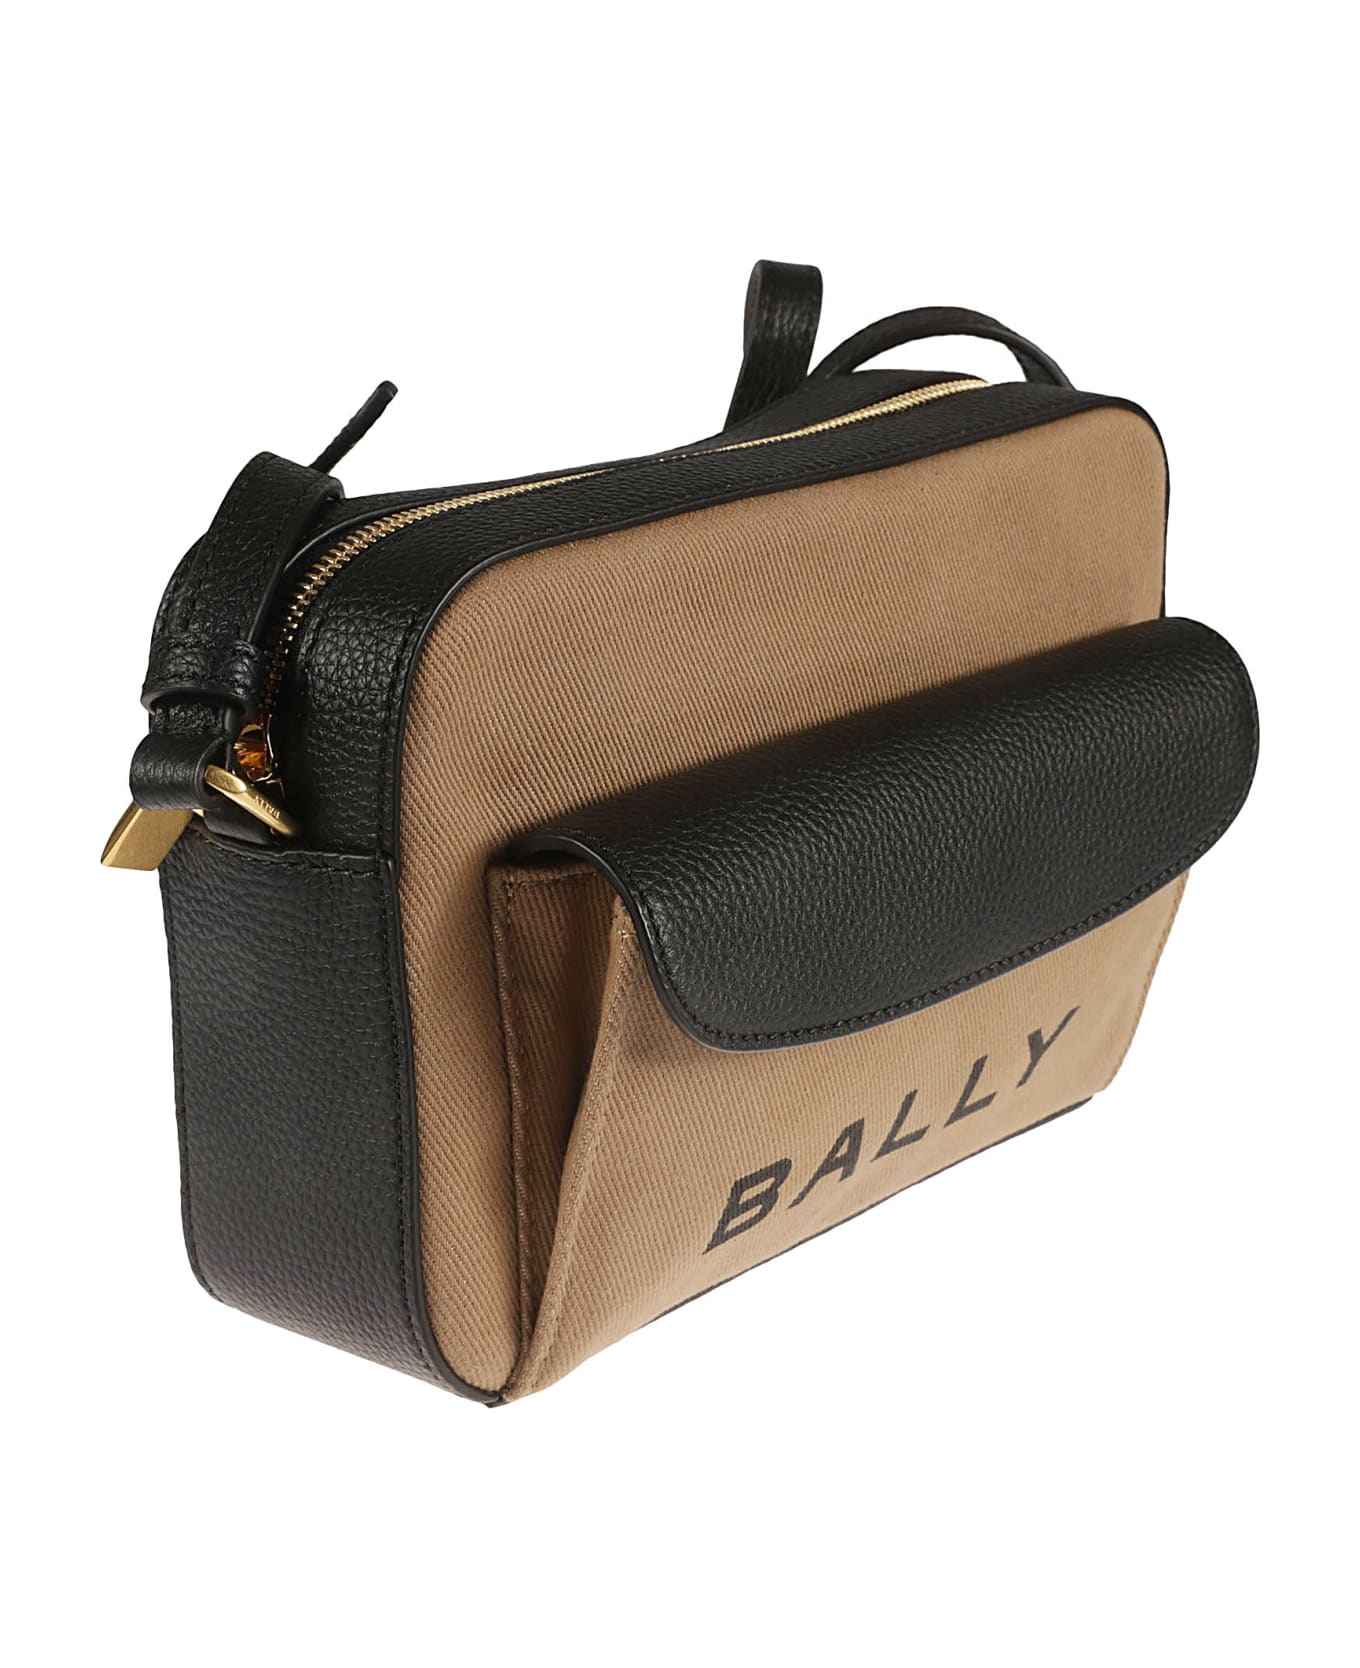 Bally Daniel Shoulder Bag - Sand